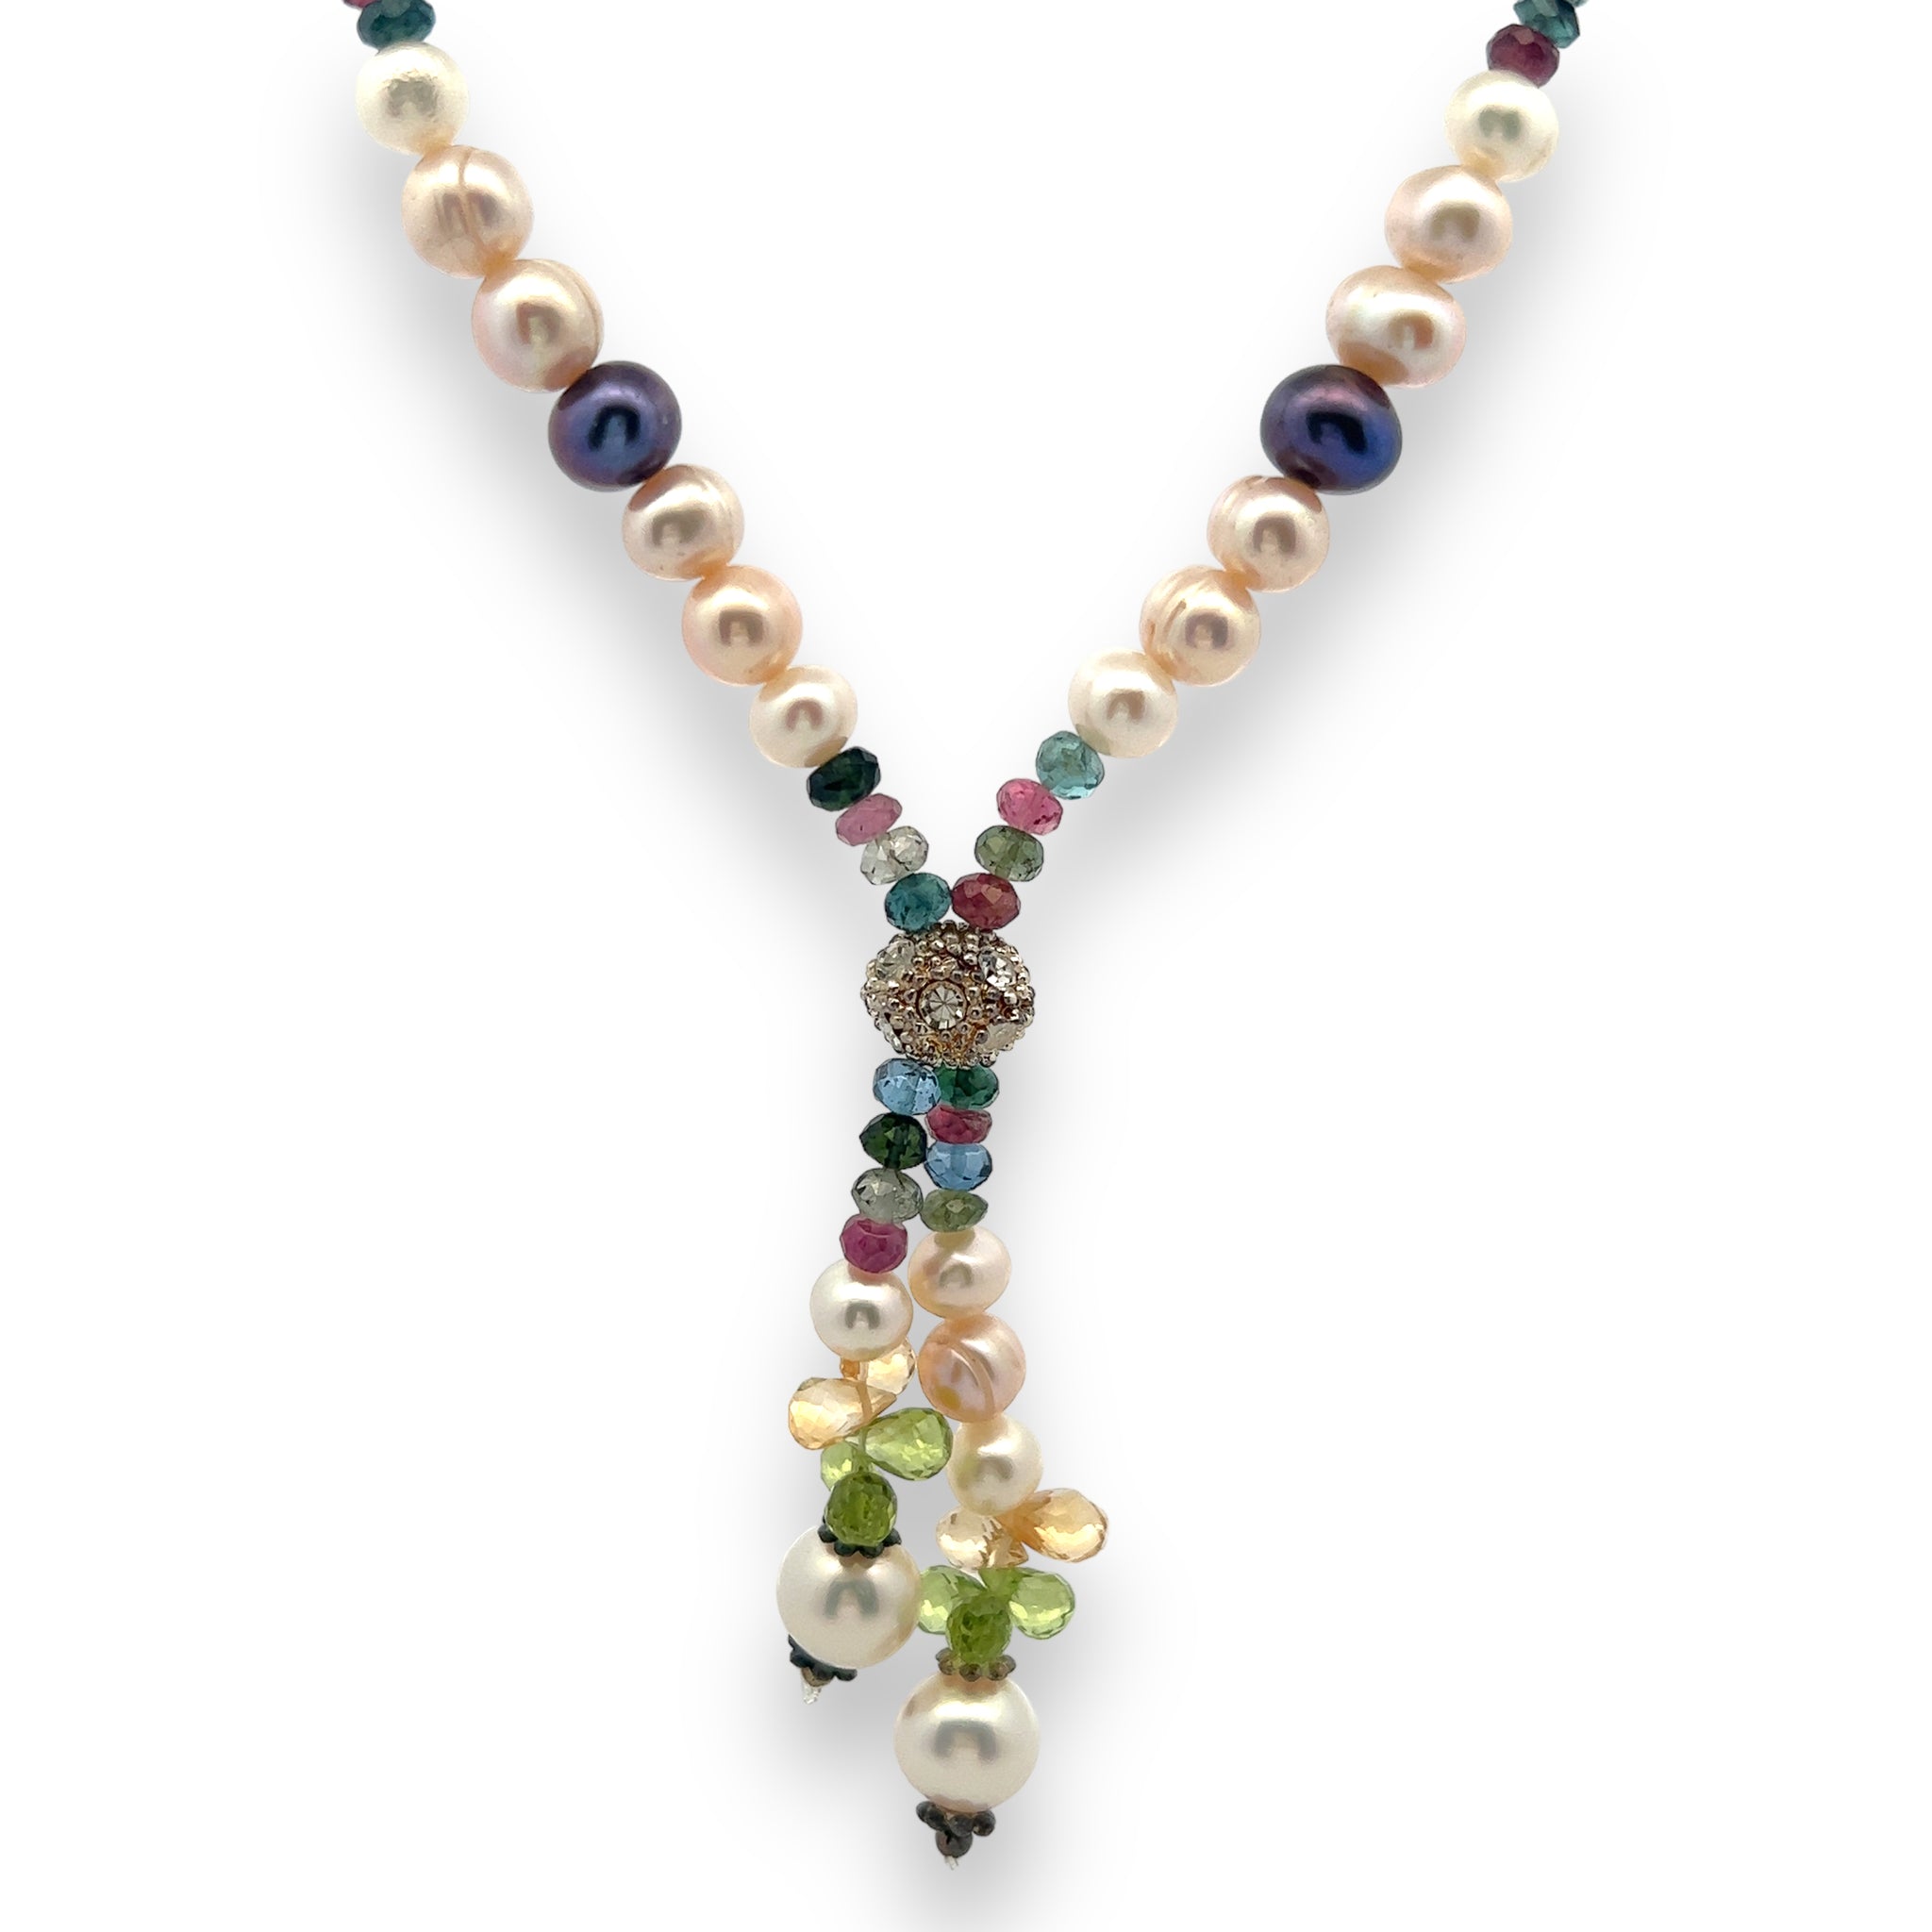 Natural Handmade Necklace 16"-18" Pearls, Peridot, Tourmaline, Citrine Gemstone Beads Jewelry